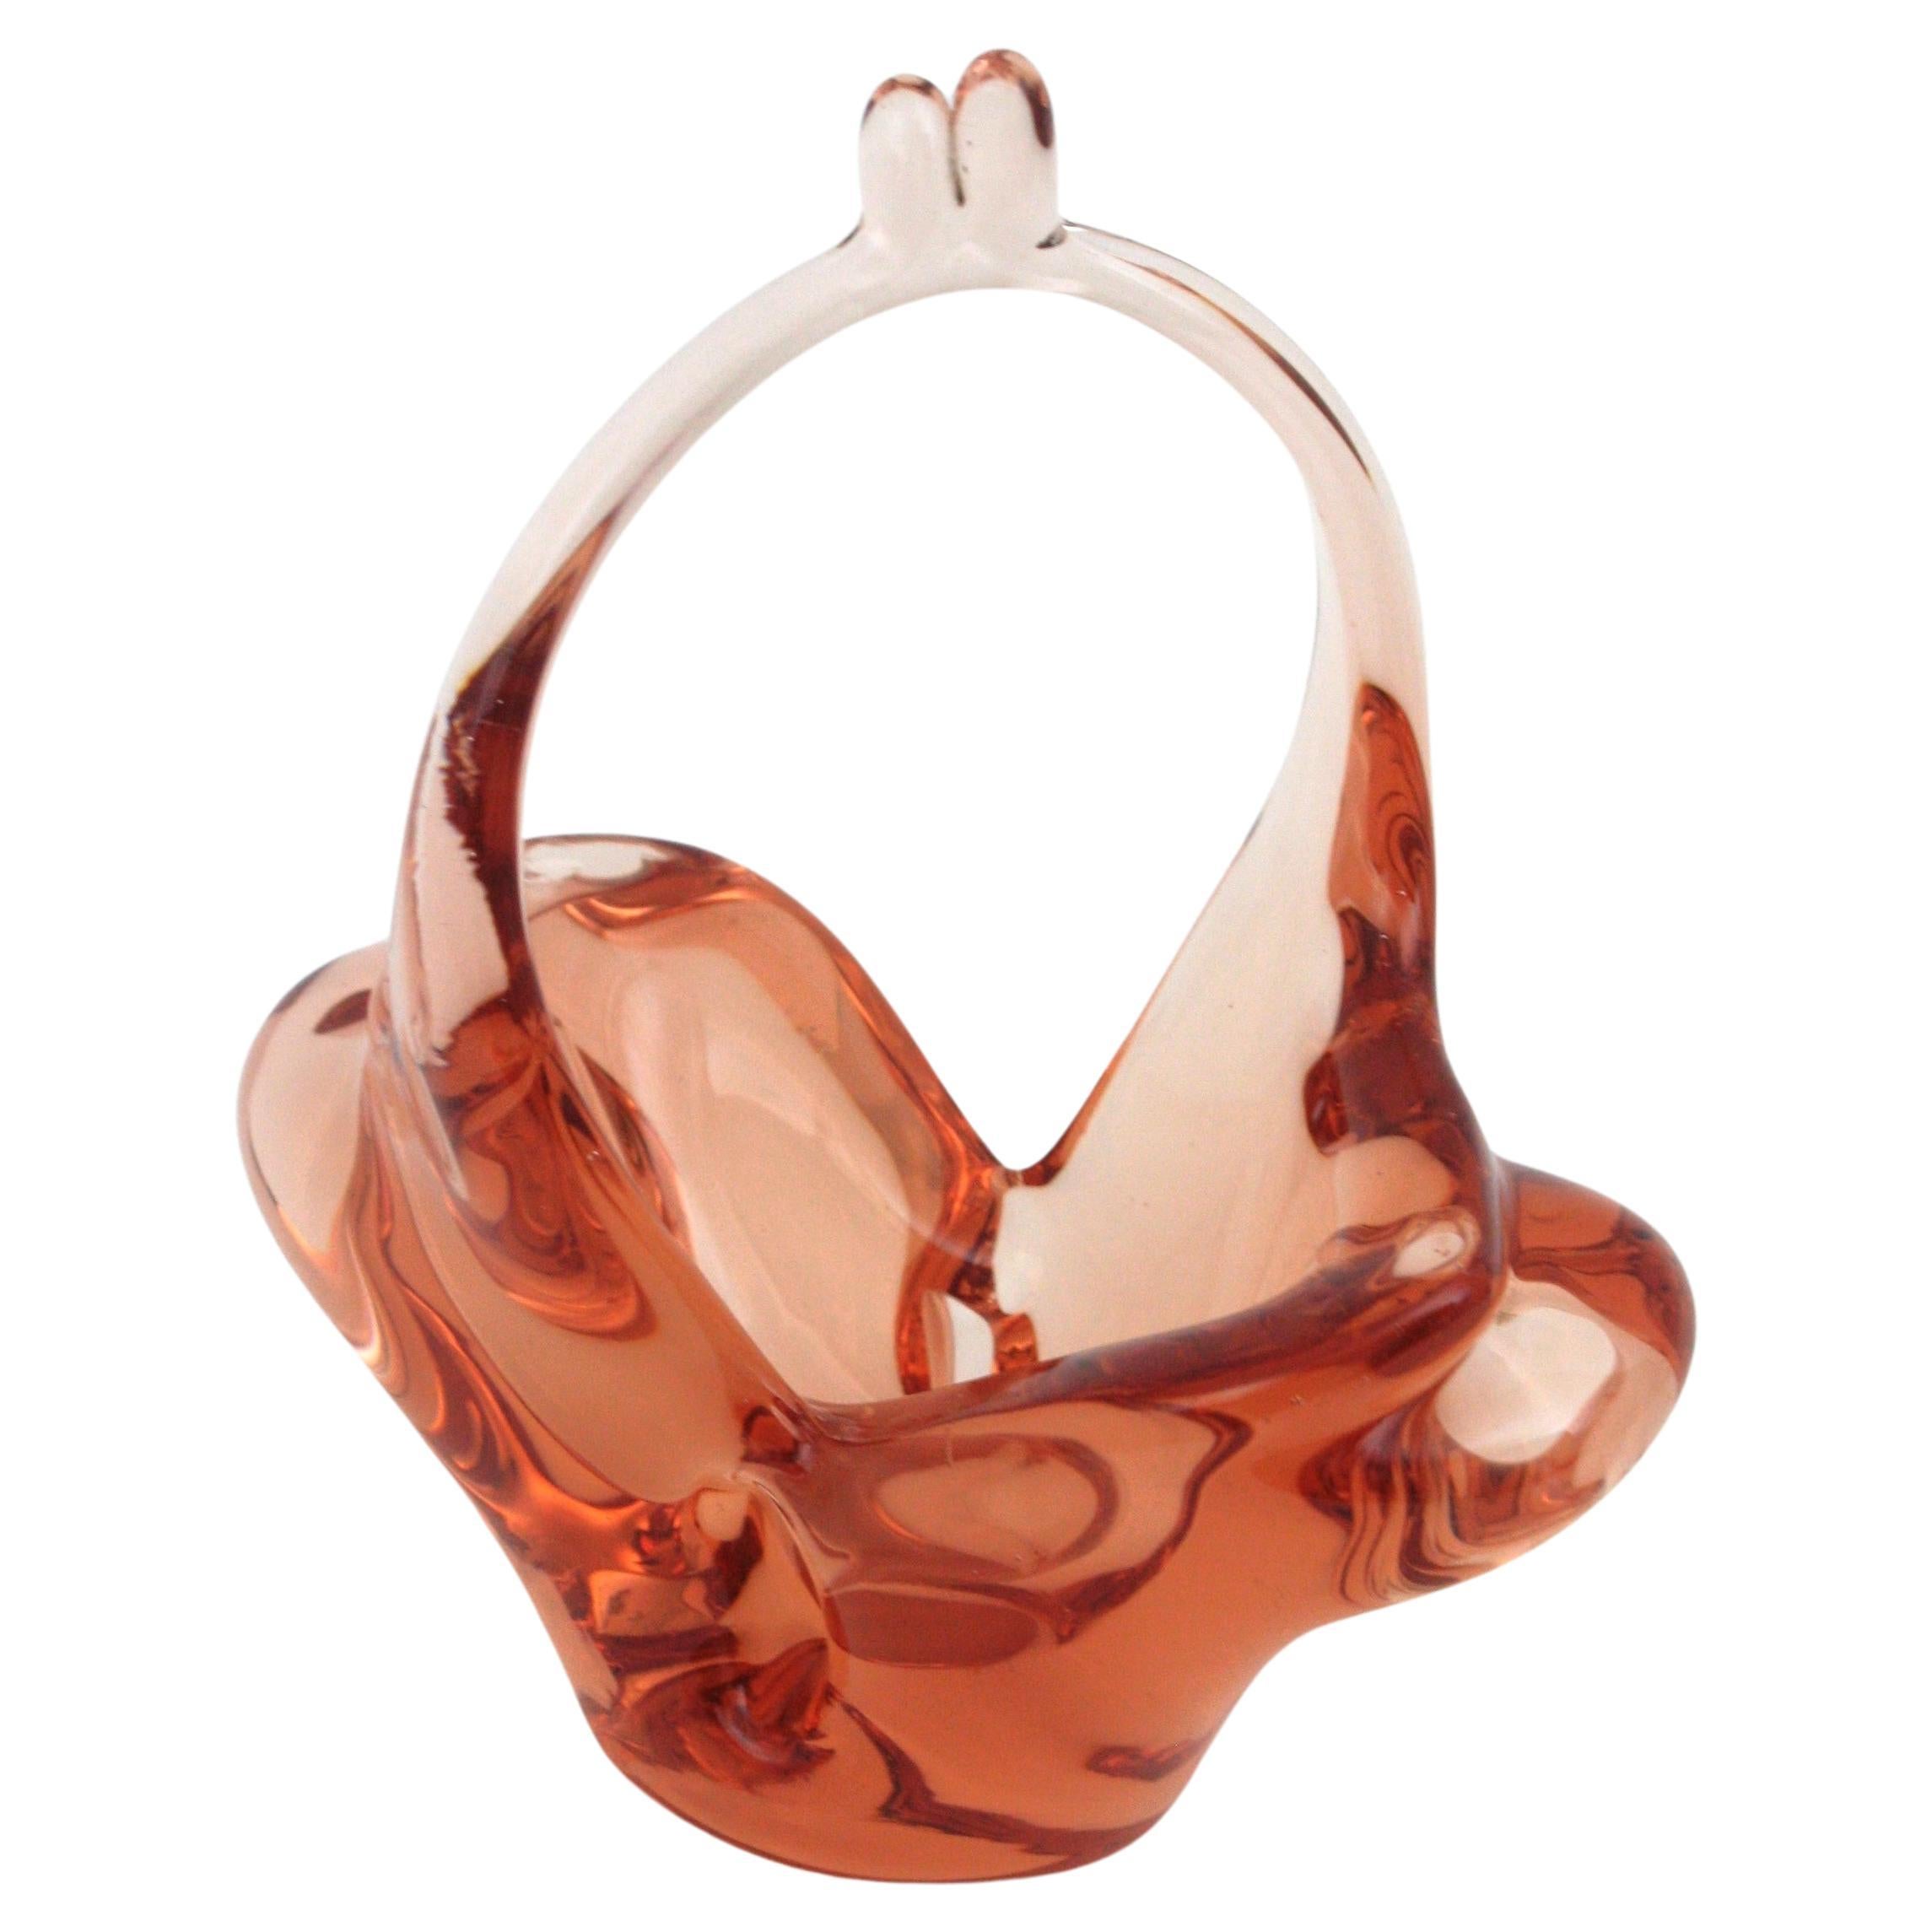 Murano Kunstglas Korb Schale. Italien, 1950er Jahre.
Schöne Murano Kunstglasschale aus pfirsichfarbenem Klarglas. 
Fein ausgeführt in Form eines Korbes.
Verwenden Sie sie als dekorative Schale, Ringschale oder Bonbonschale und stellen Sie sie allein